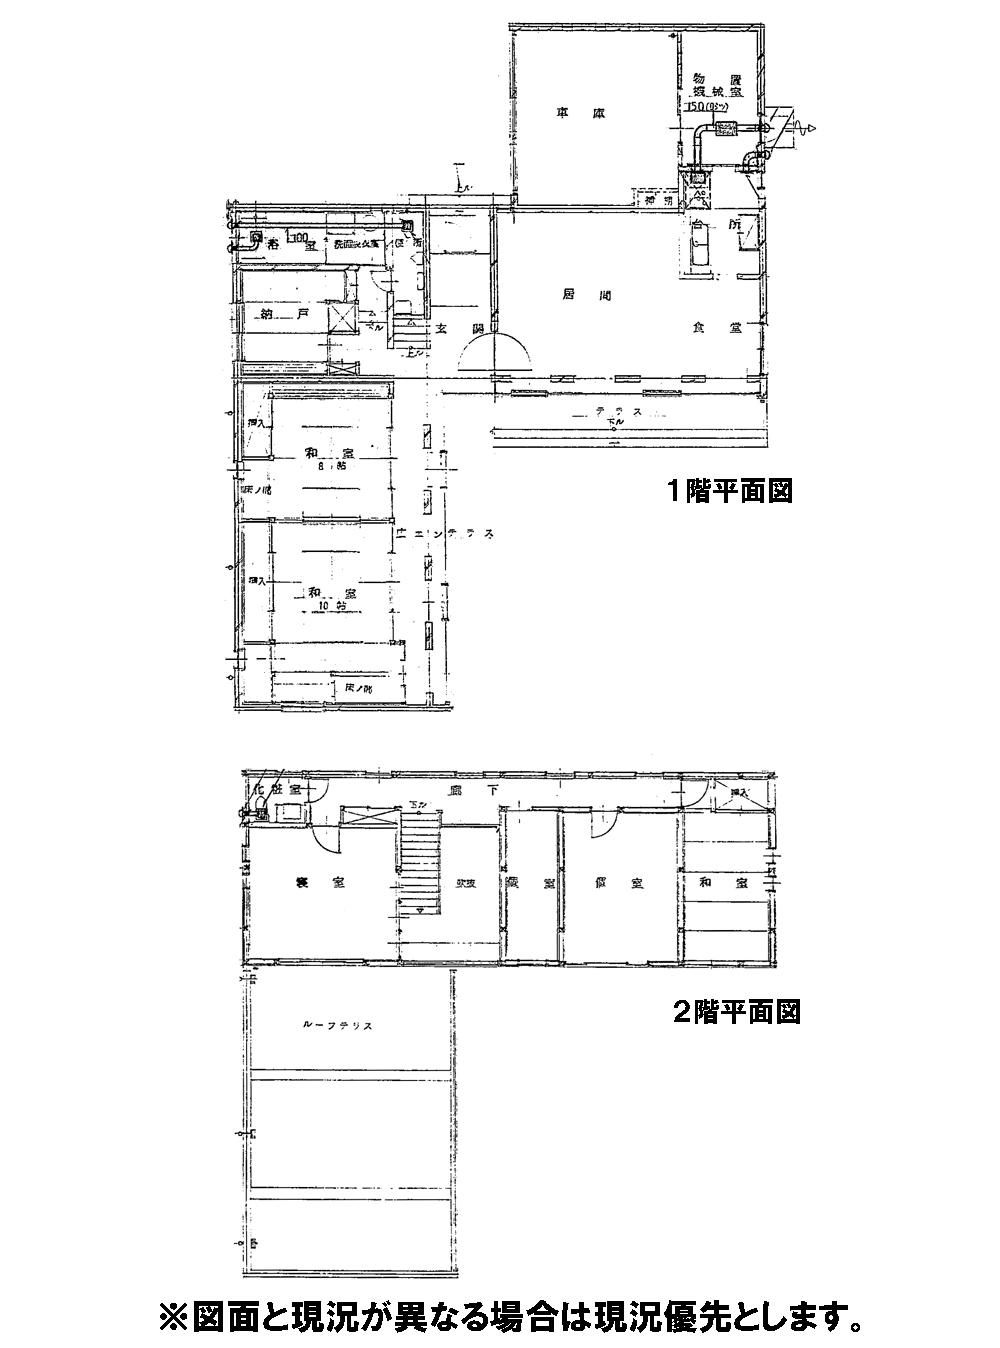 Floor plan. 24,800,000 yen, 5LDK + S (storeroom), Land area 524.5 sq m , Building area 255.64 sq m 5LDK